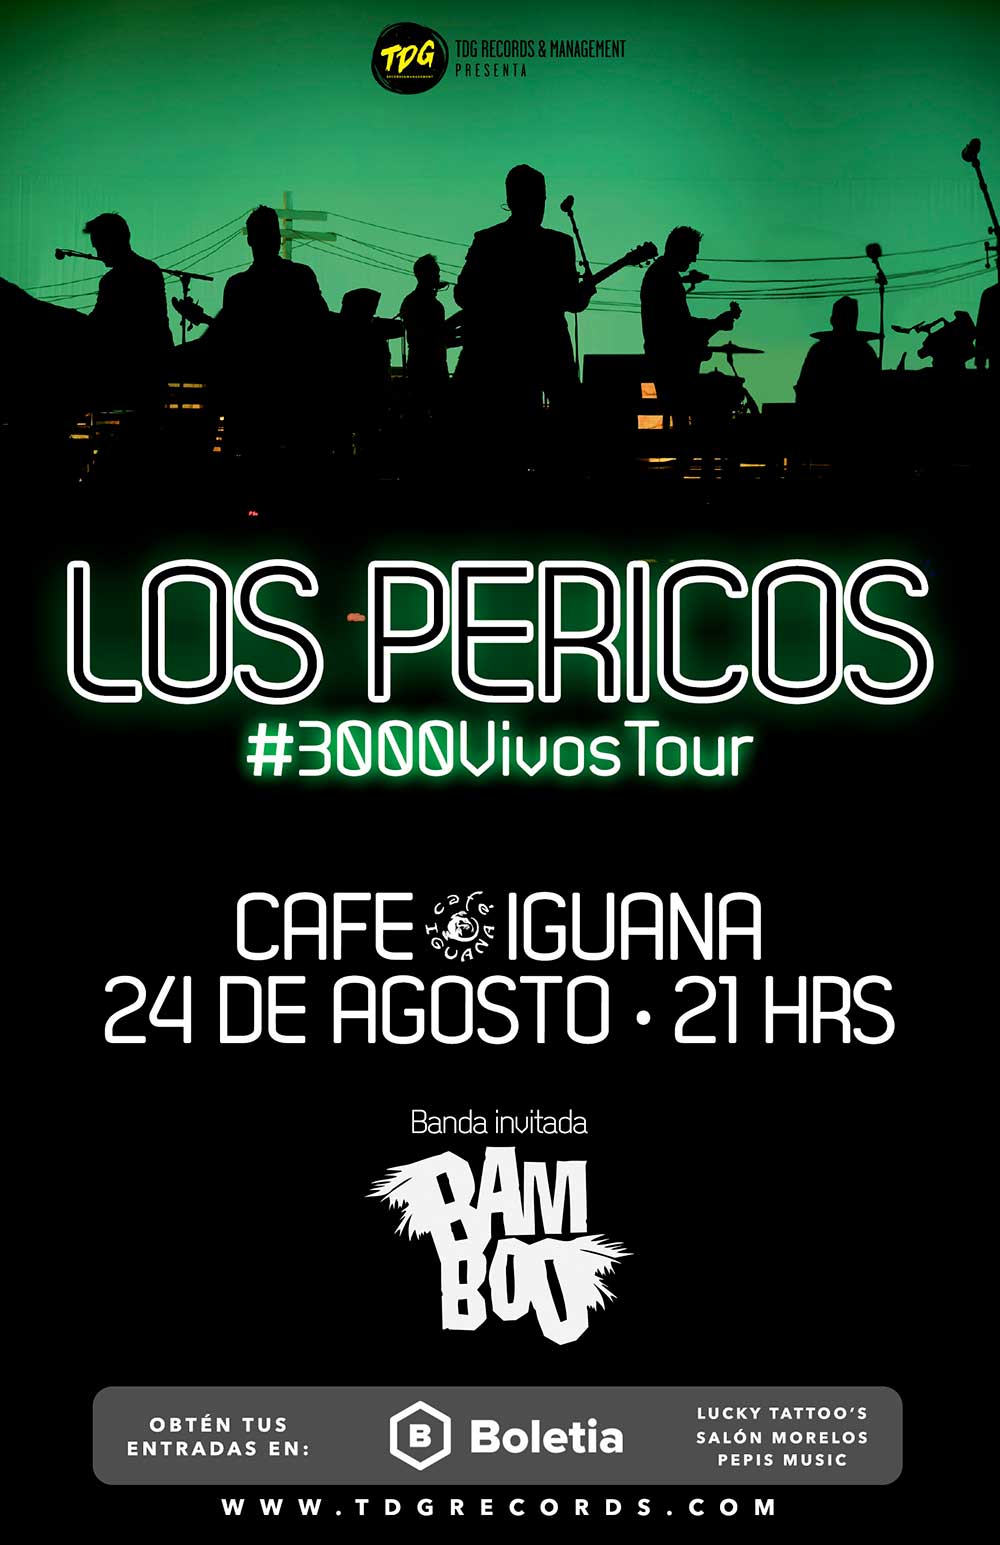 Pericos @ Café Iguana